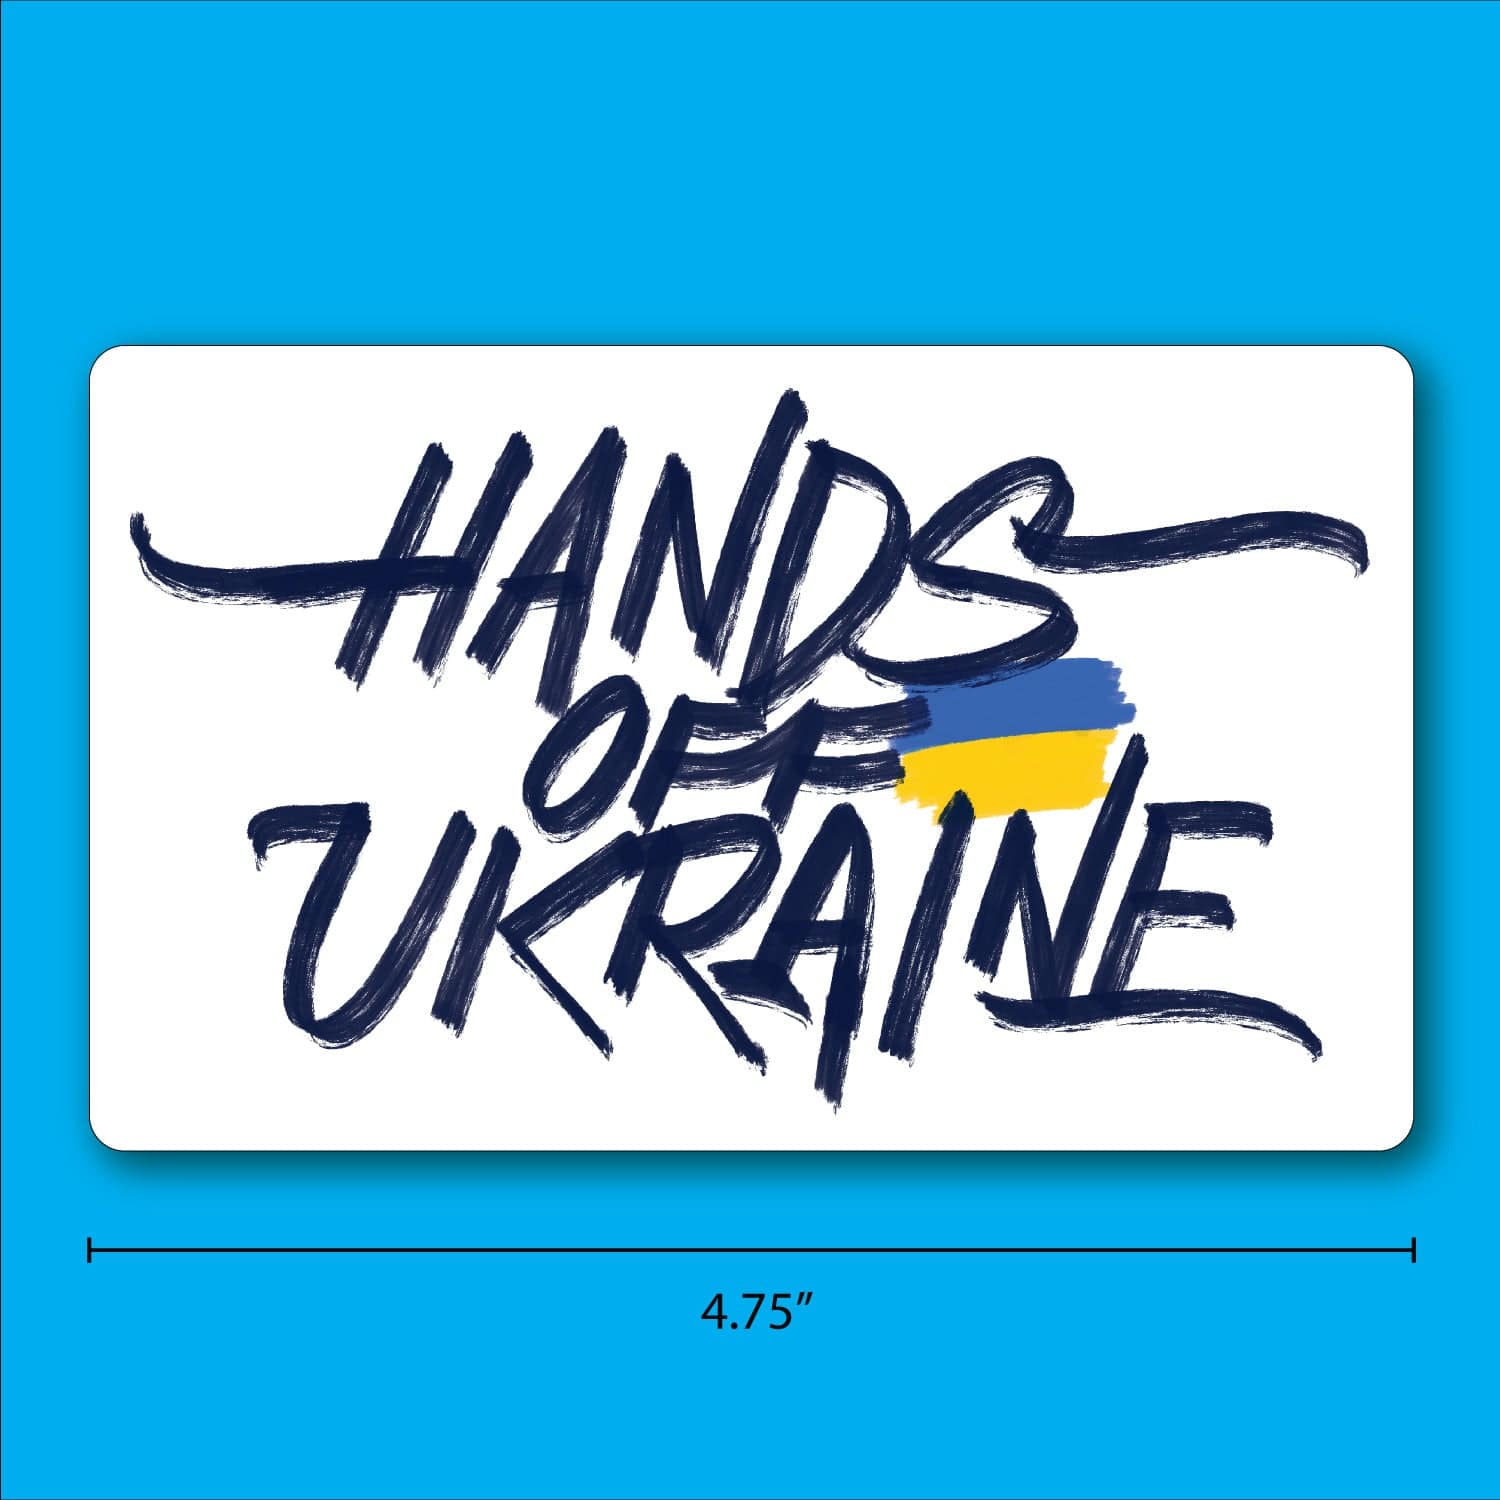 Hands Off Ukraine - Sticker